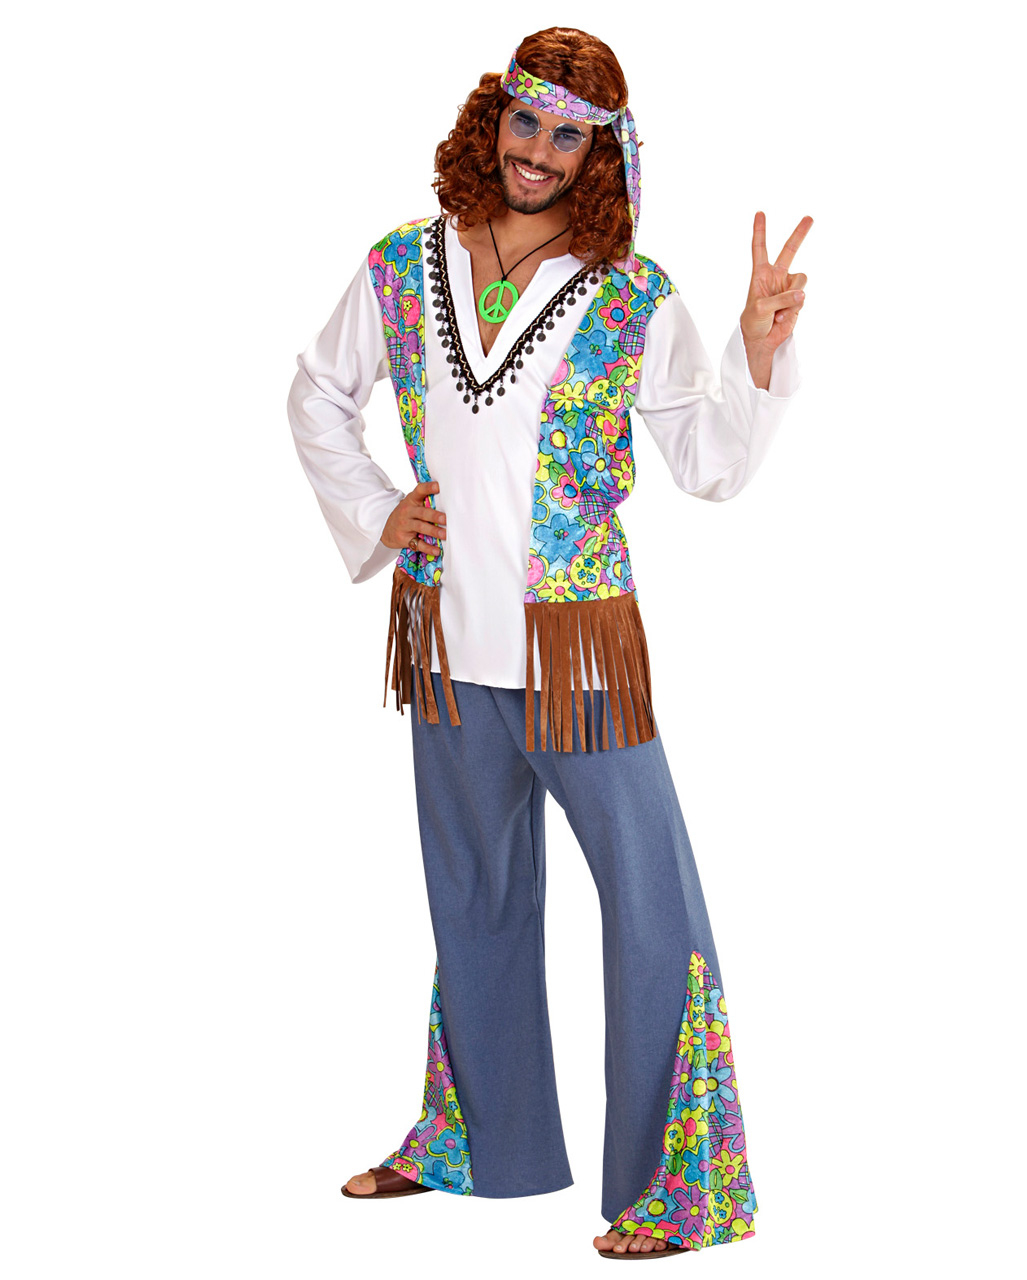 Hippie Männer Kostüm Gr. Xl Für Fasching  Horror-Shop bei Kostüm Ideen Männer